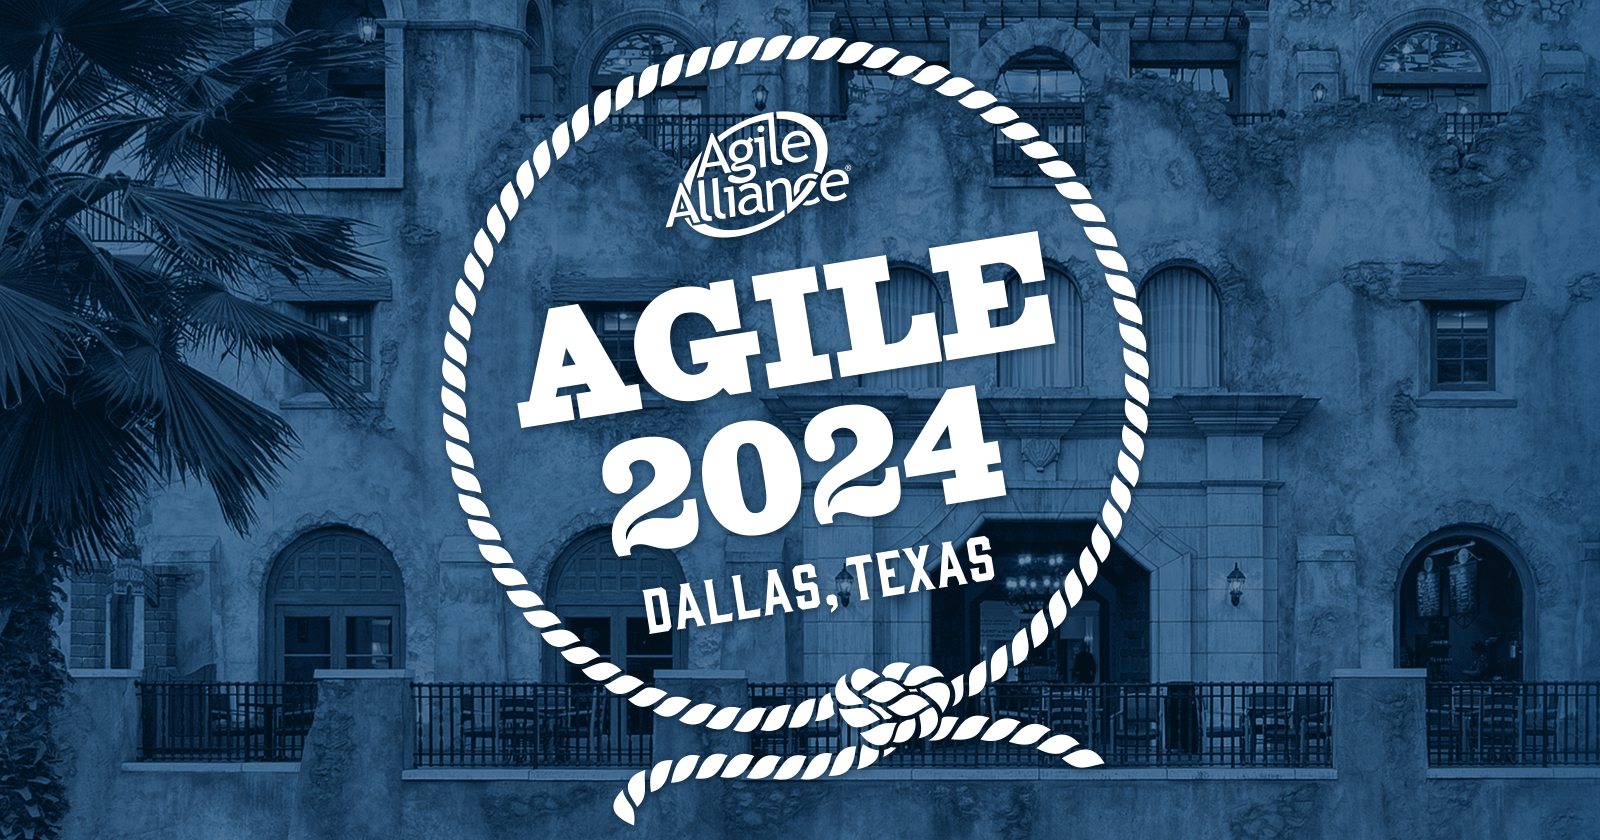 Agile2024 in Dallas, Texas